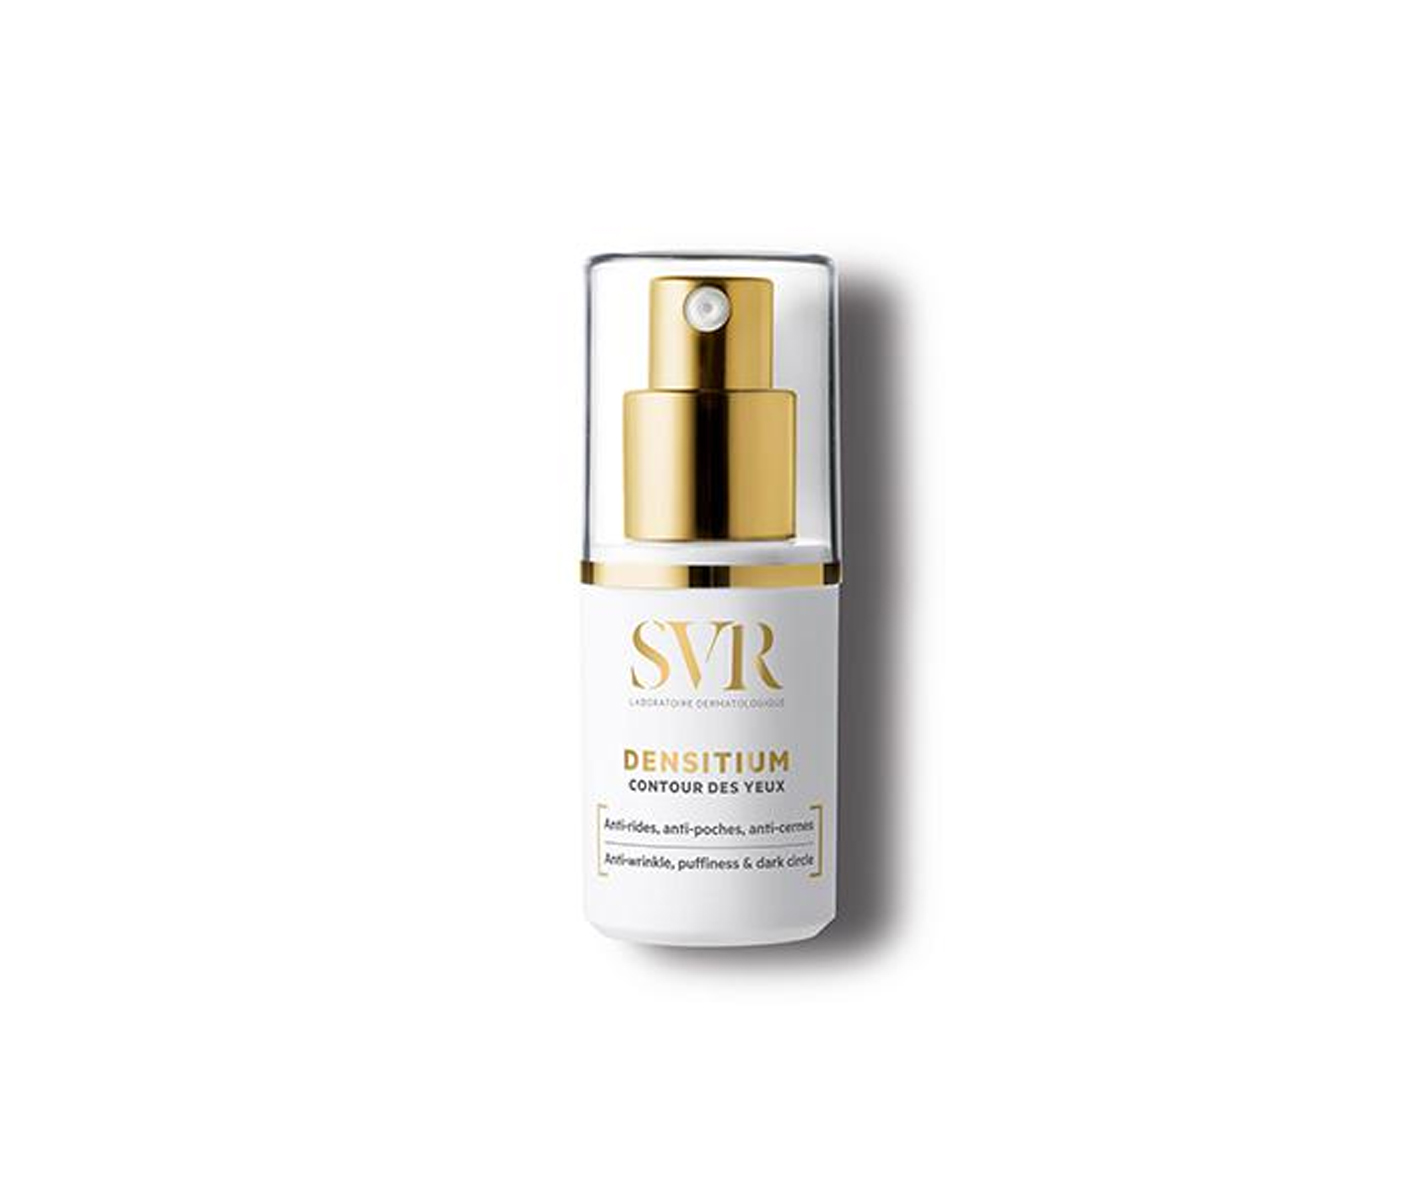 SVR, Densitium, anti-wrinkle eye cream